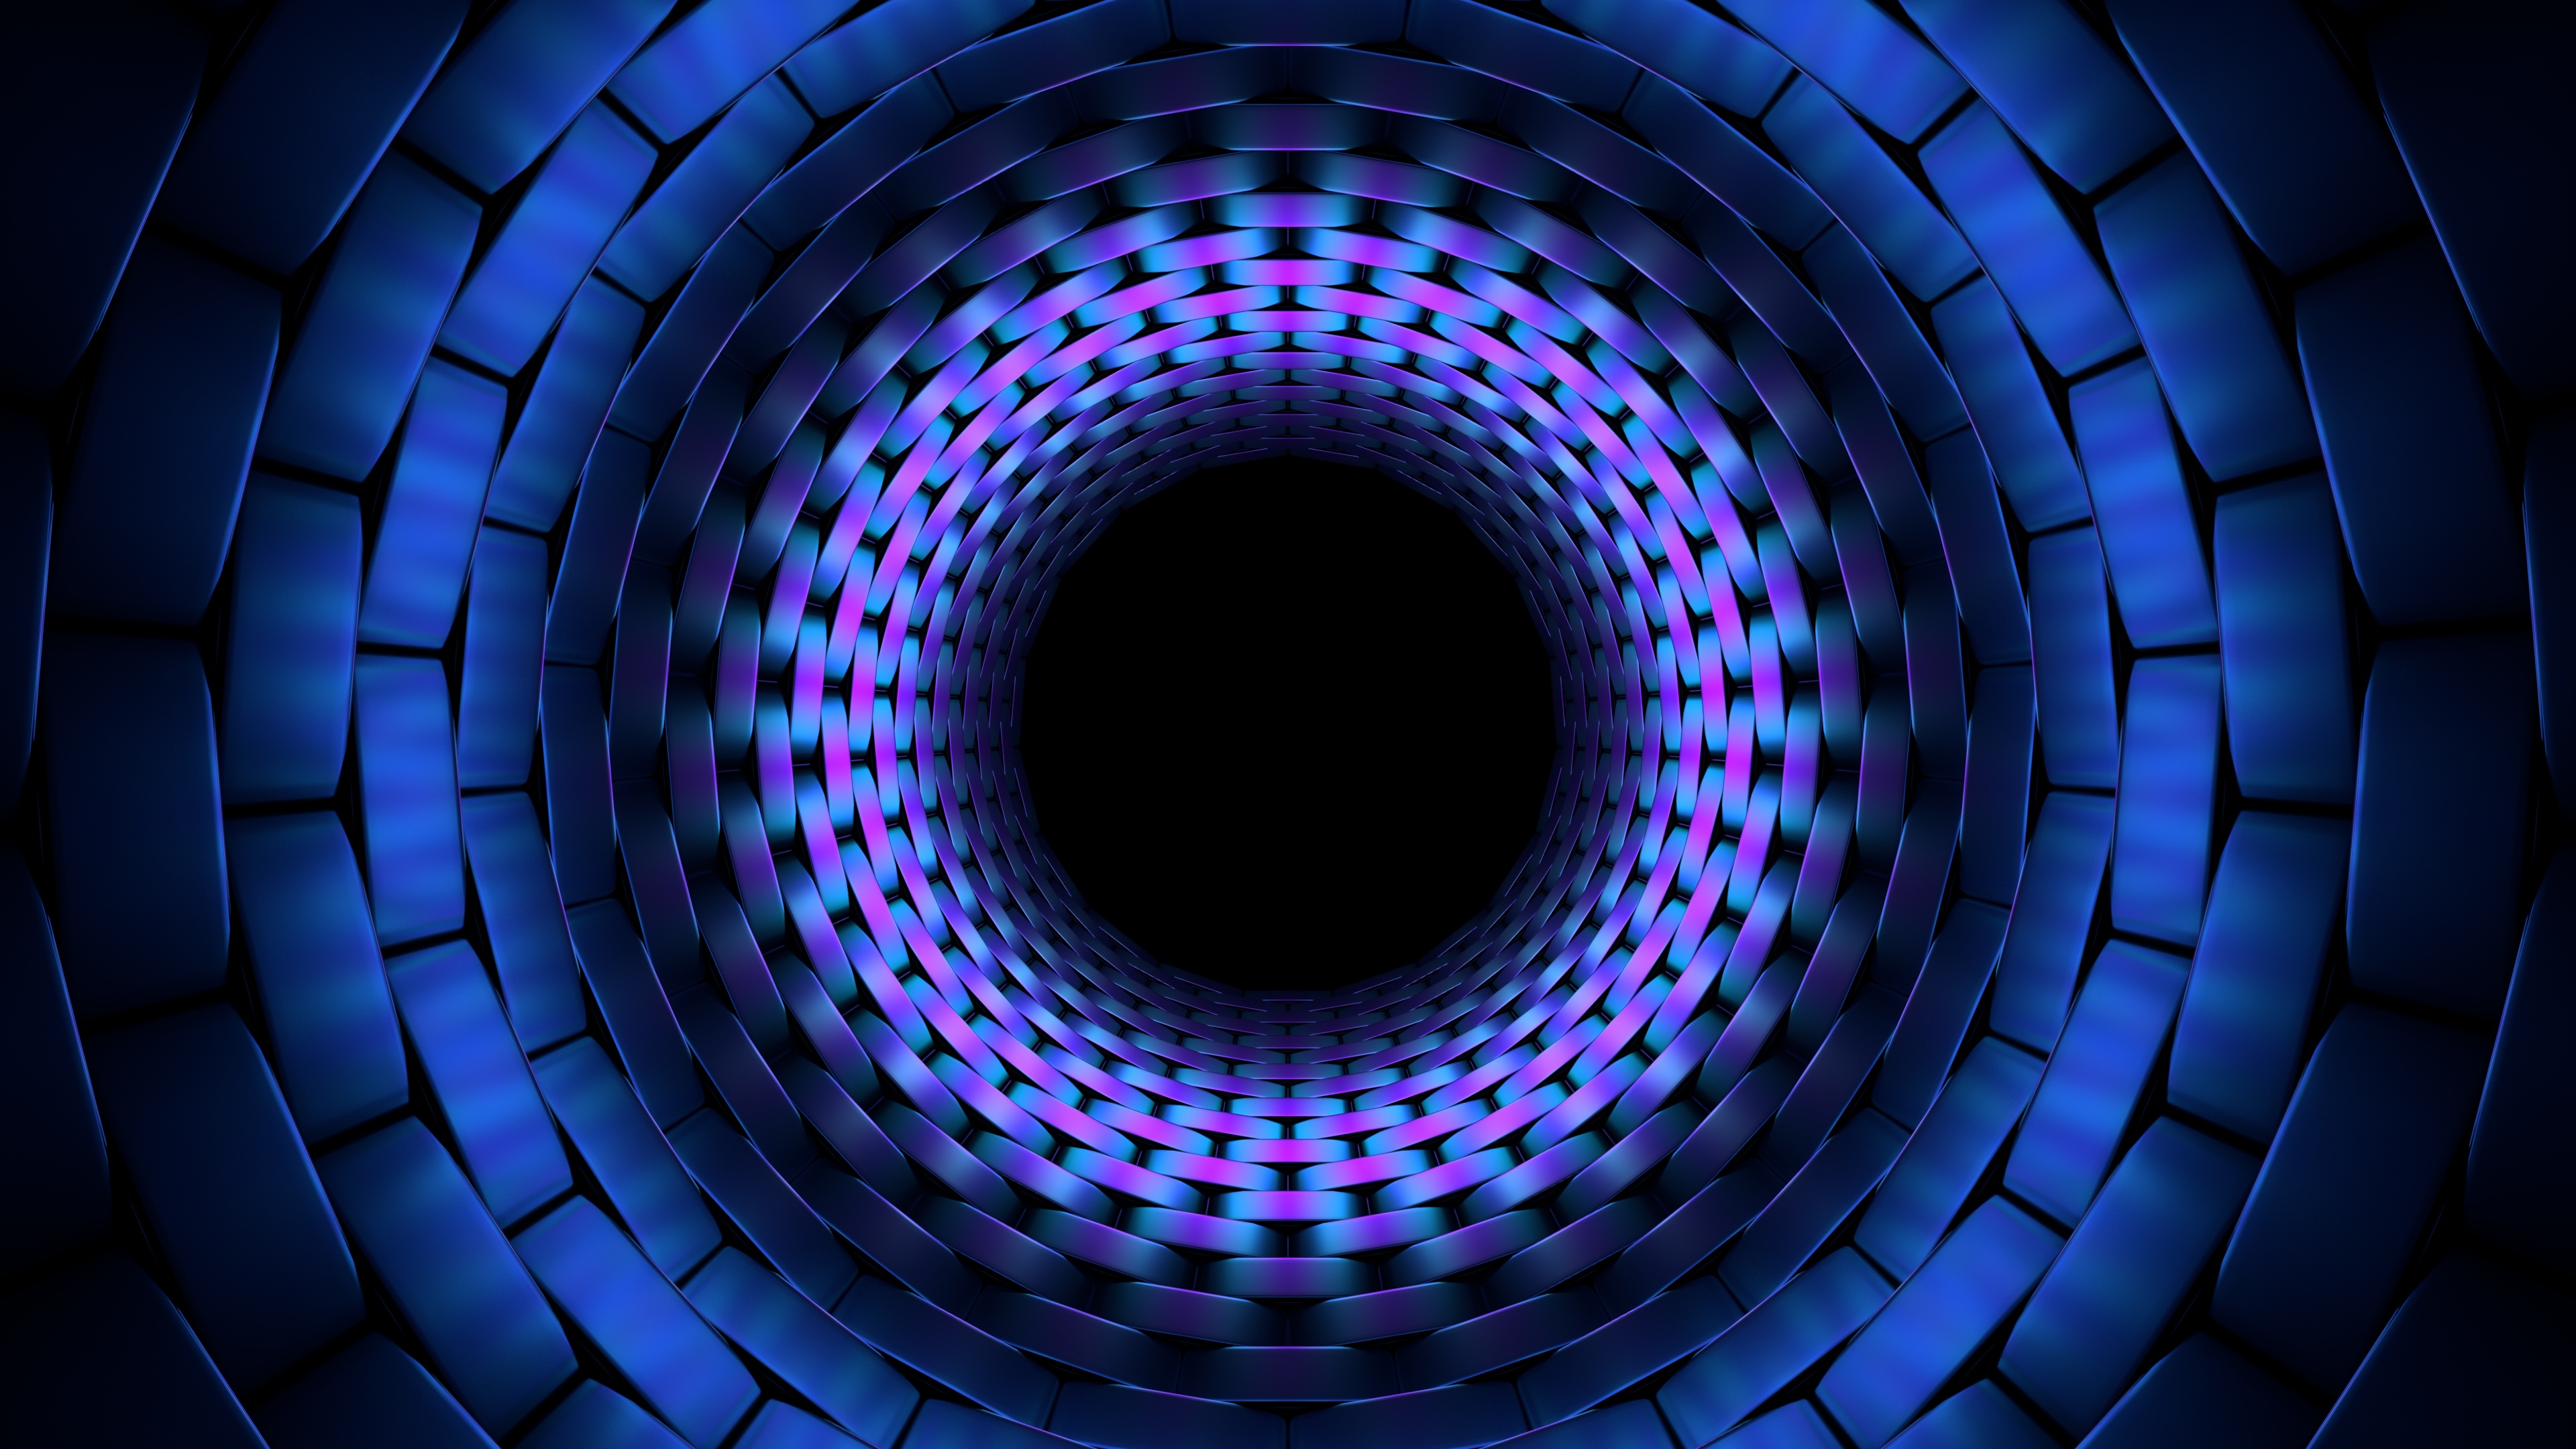 fondo de pantalla de holograma 3d,azul,azul cobalto,circulo,simetría,azul eléctrico